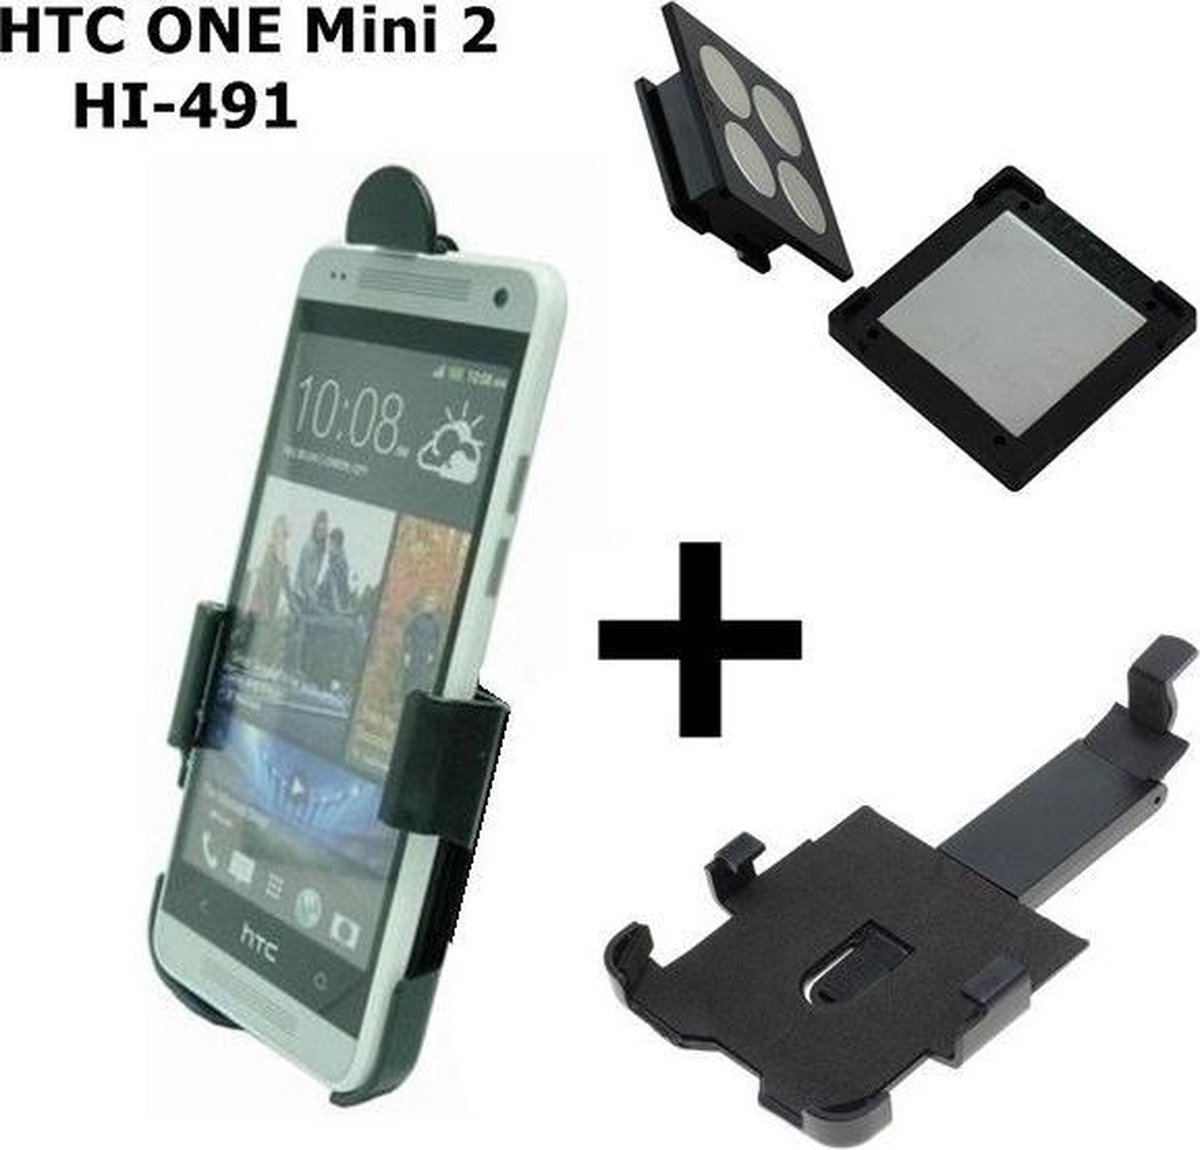 Haicom magnetische houder voor HTC ONE Mini 2 HI-491